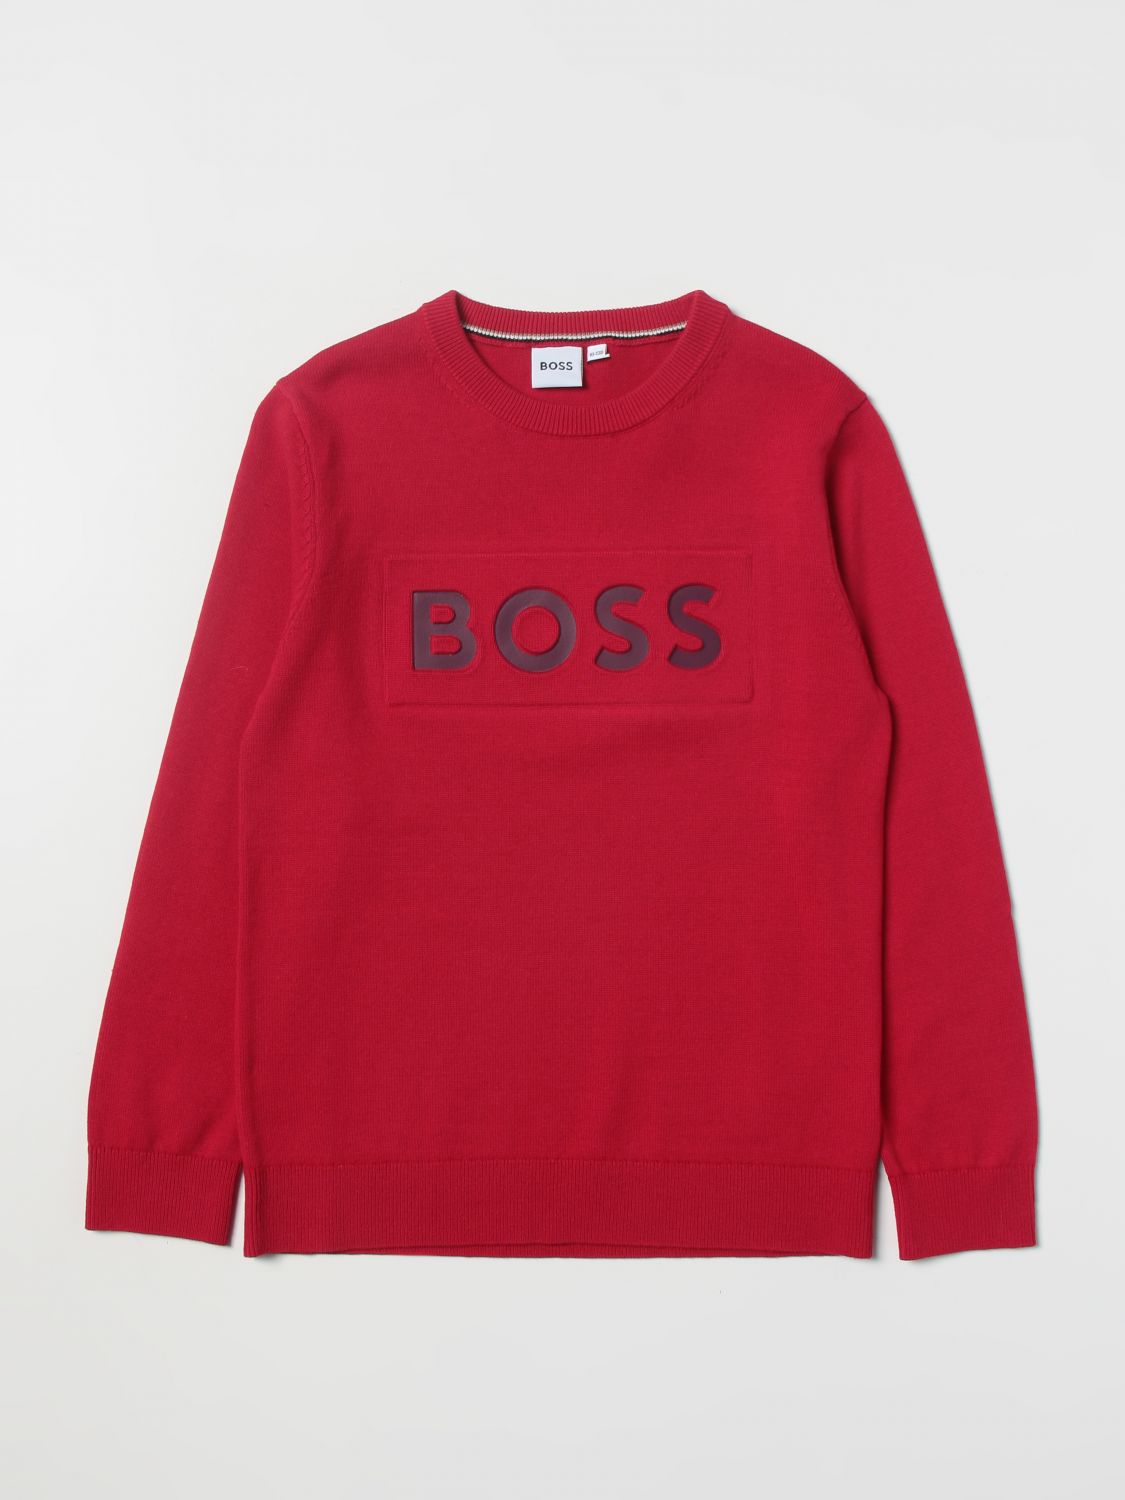 Verknald teer weg Hugo Boss Outlet: sweater for boys - Red | Hugo Boss sweater J25M42 online  on GIGLIO.COM